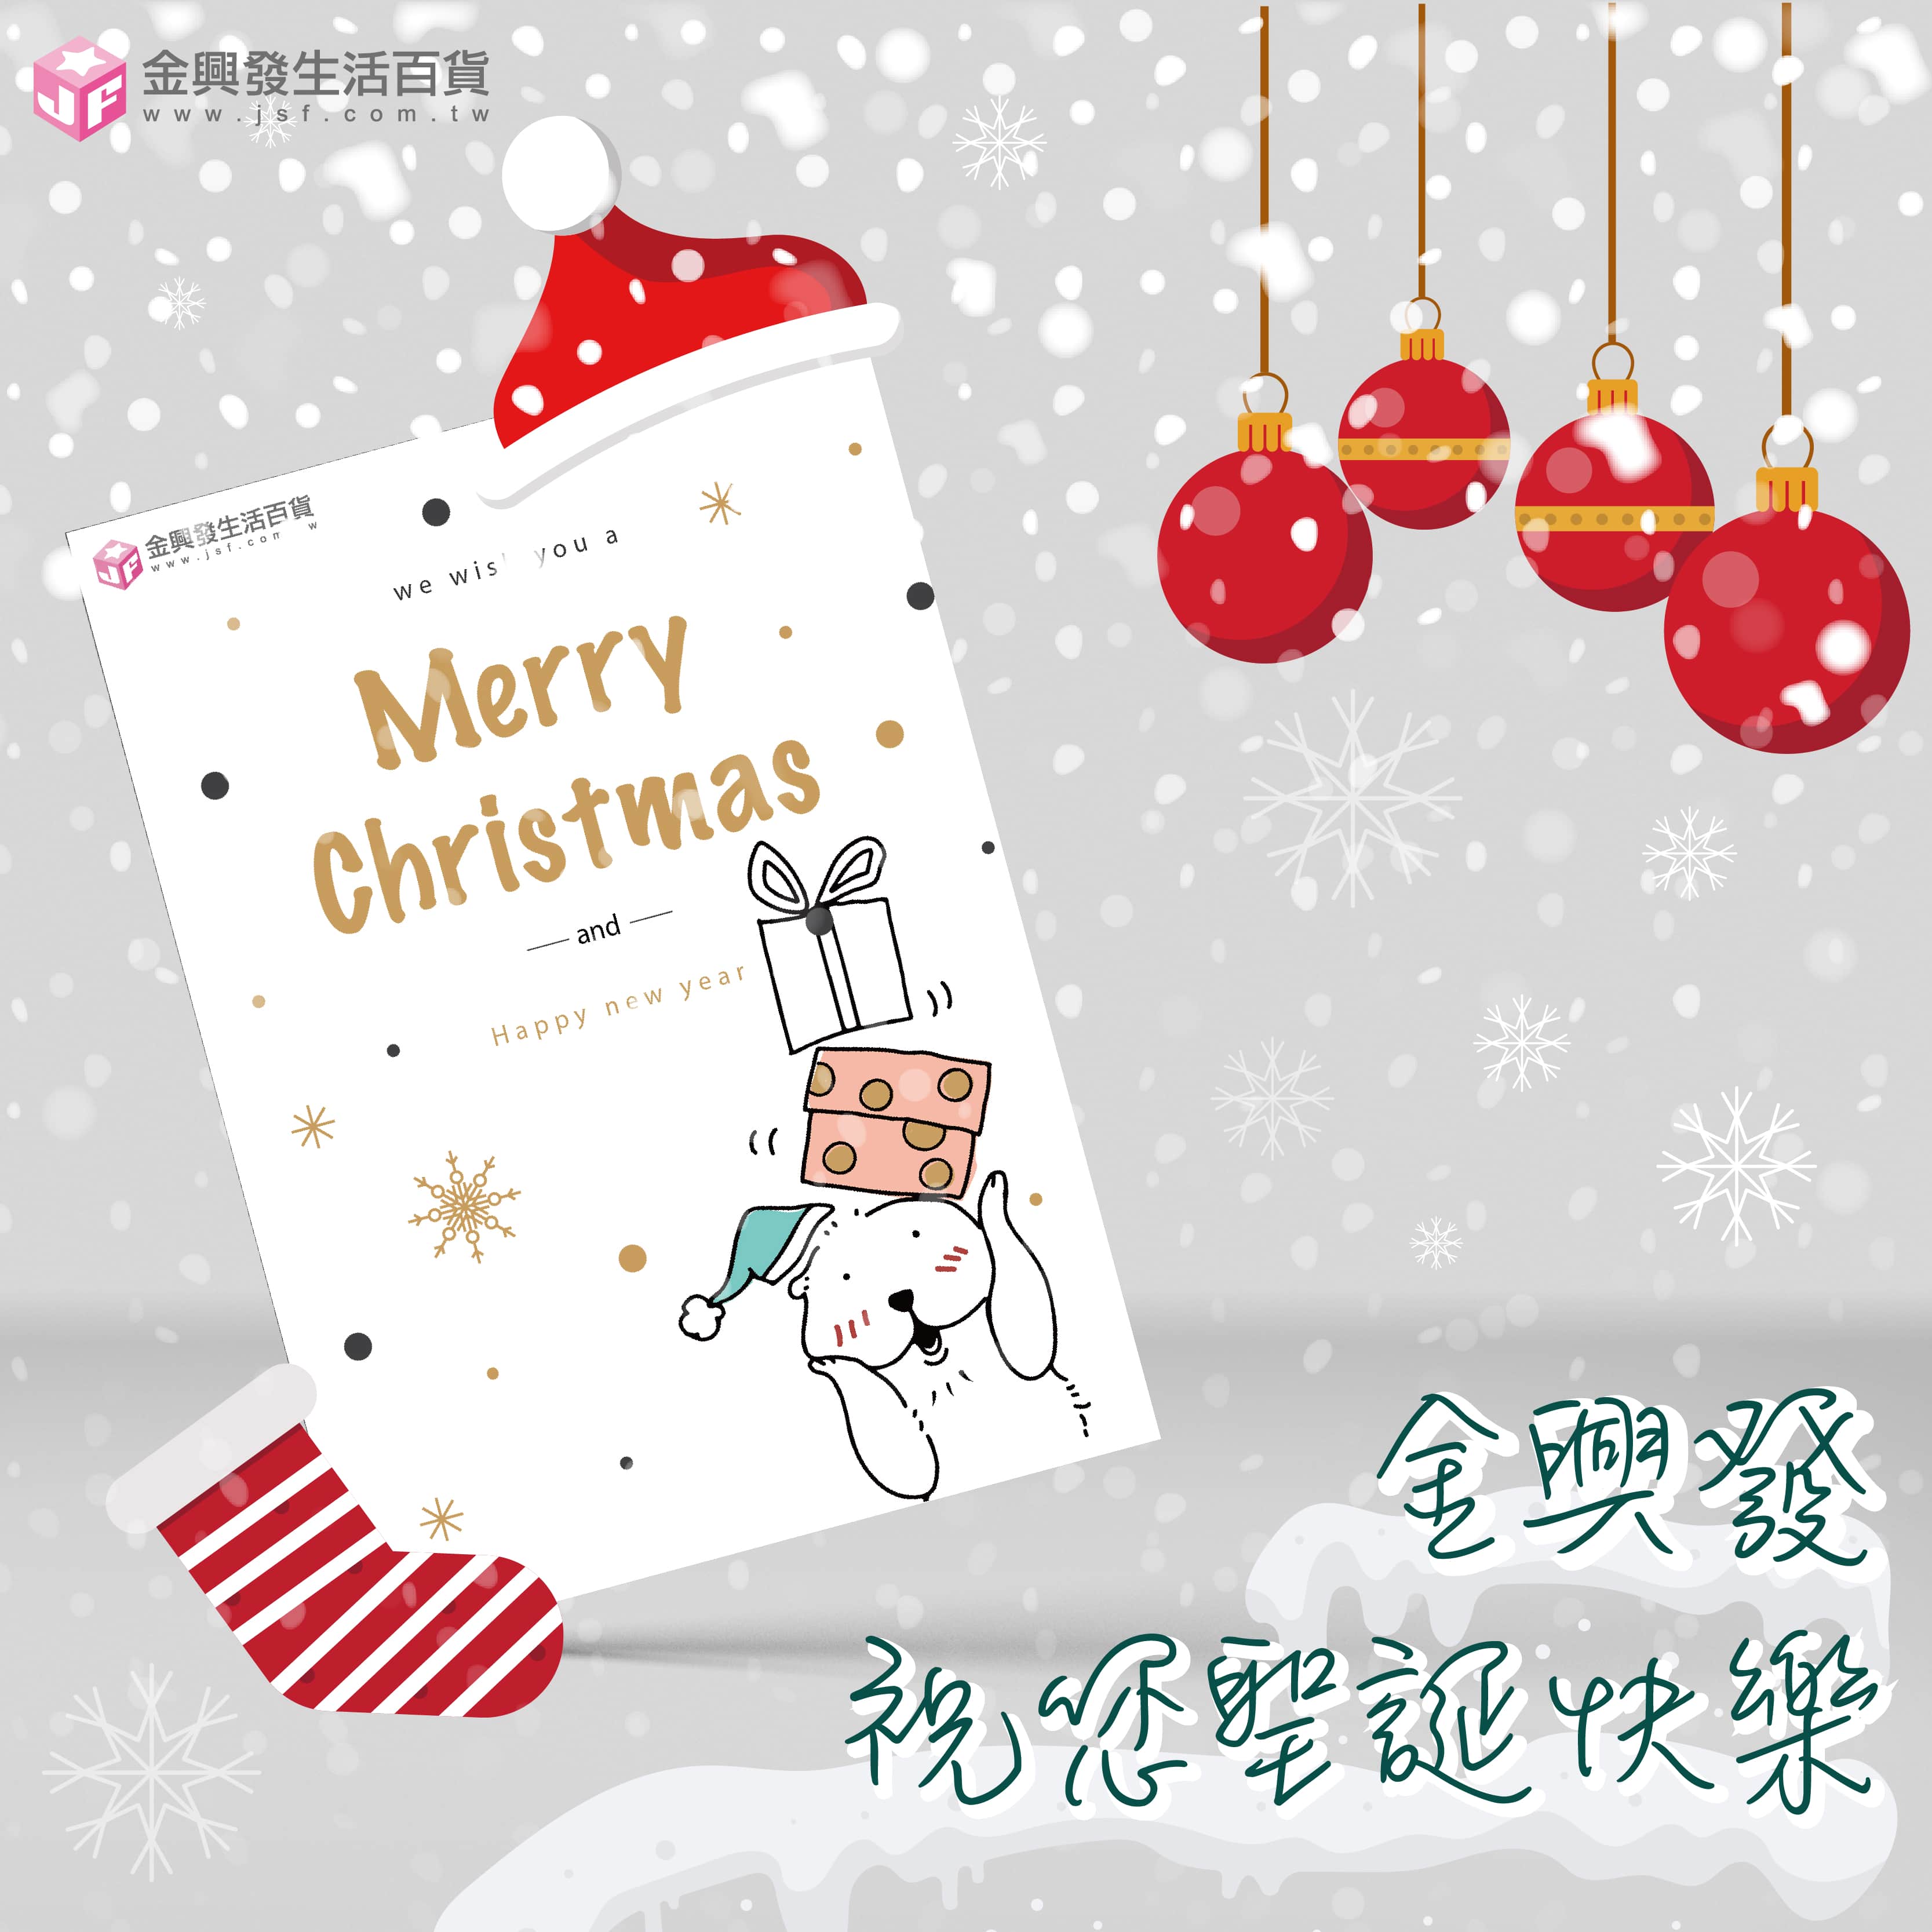 聖誕快樂-電子賀卡下載 - 最新消息 - 金興發股份有限公司